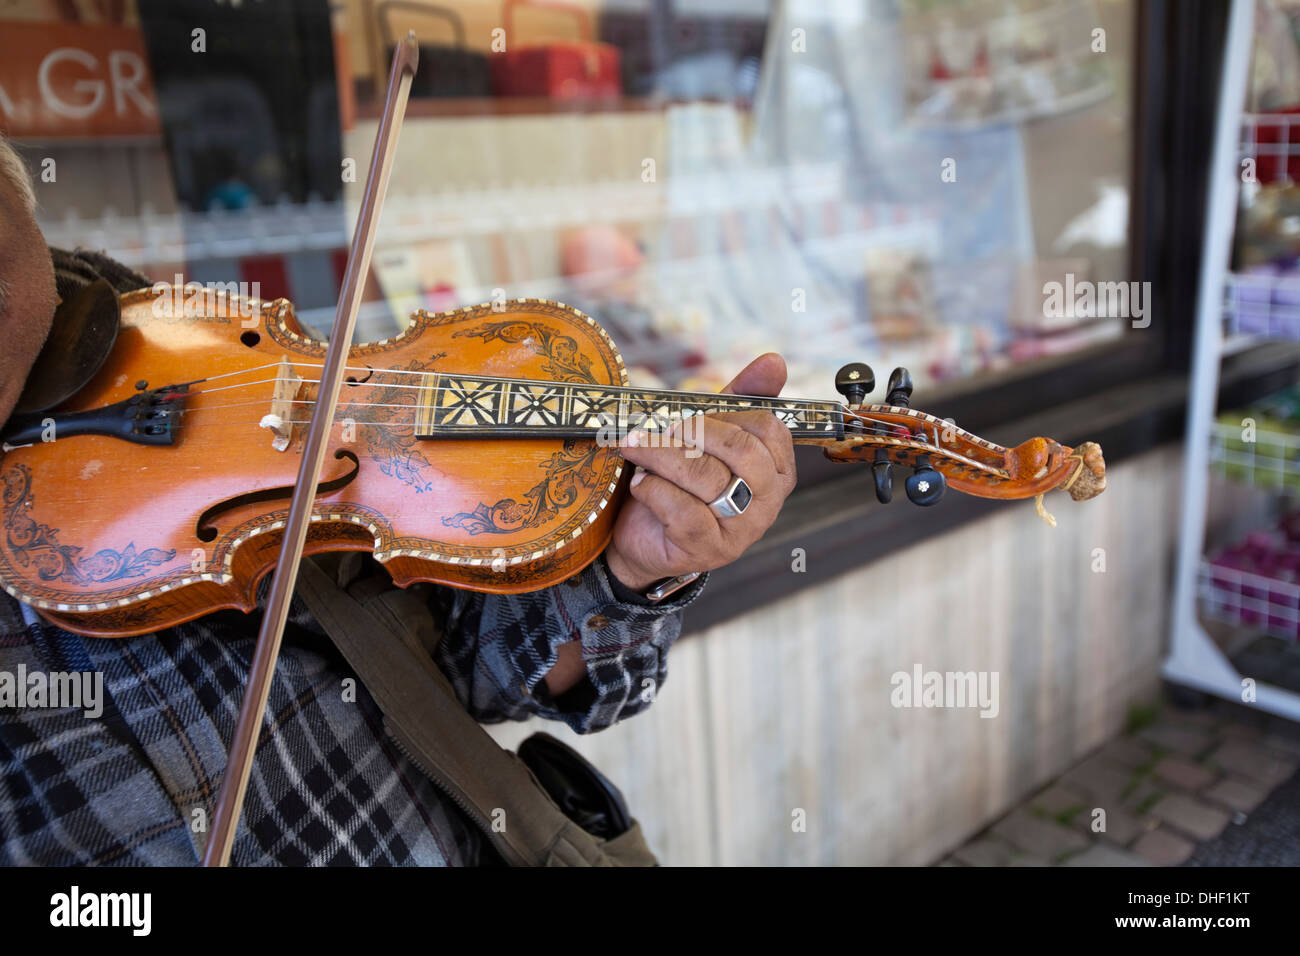 Musicien de rue, jouant du violon Banque D'Images